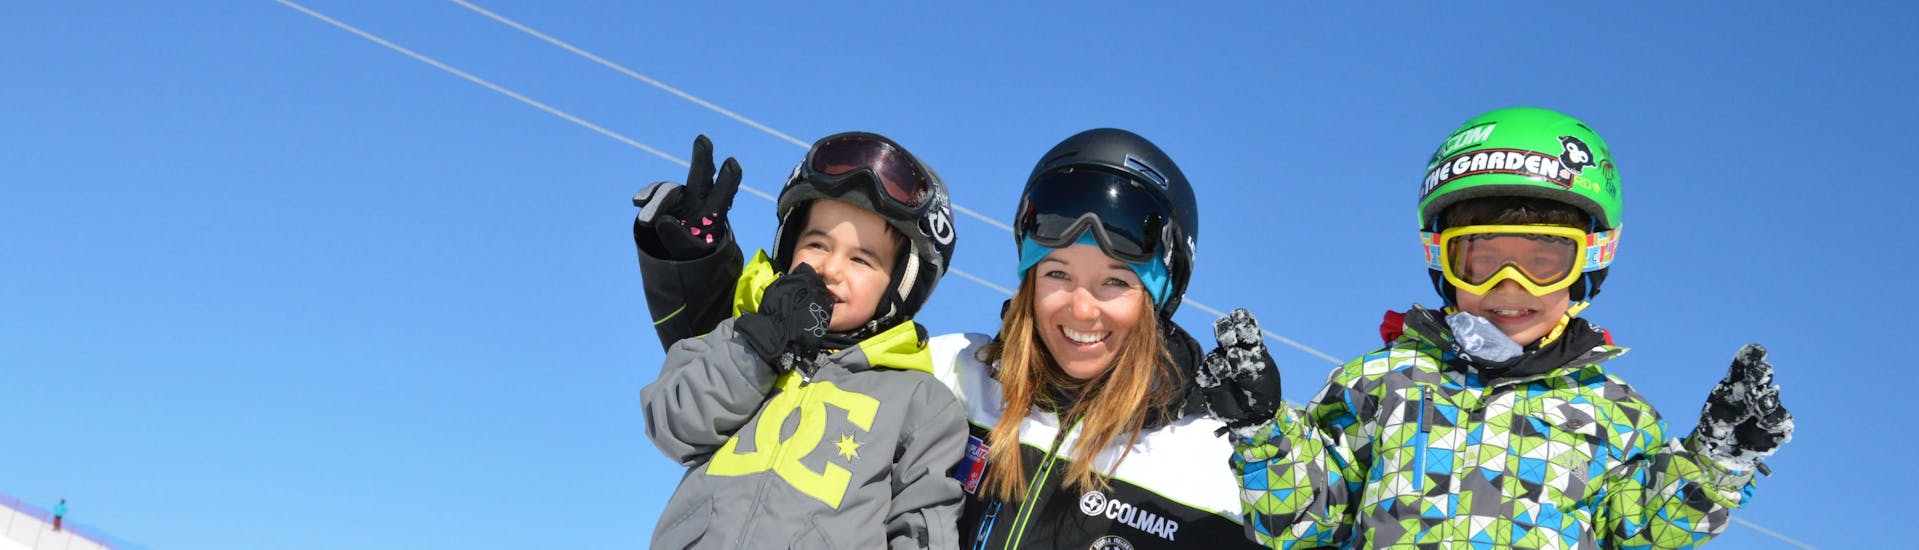 Deux enfants heureux pendant les cours de snowboard pour enfants de niveau expérimenté avec Cimaschool Plan de Corones.